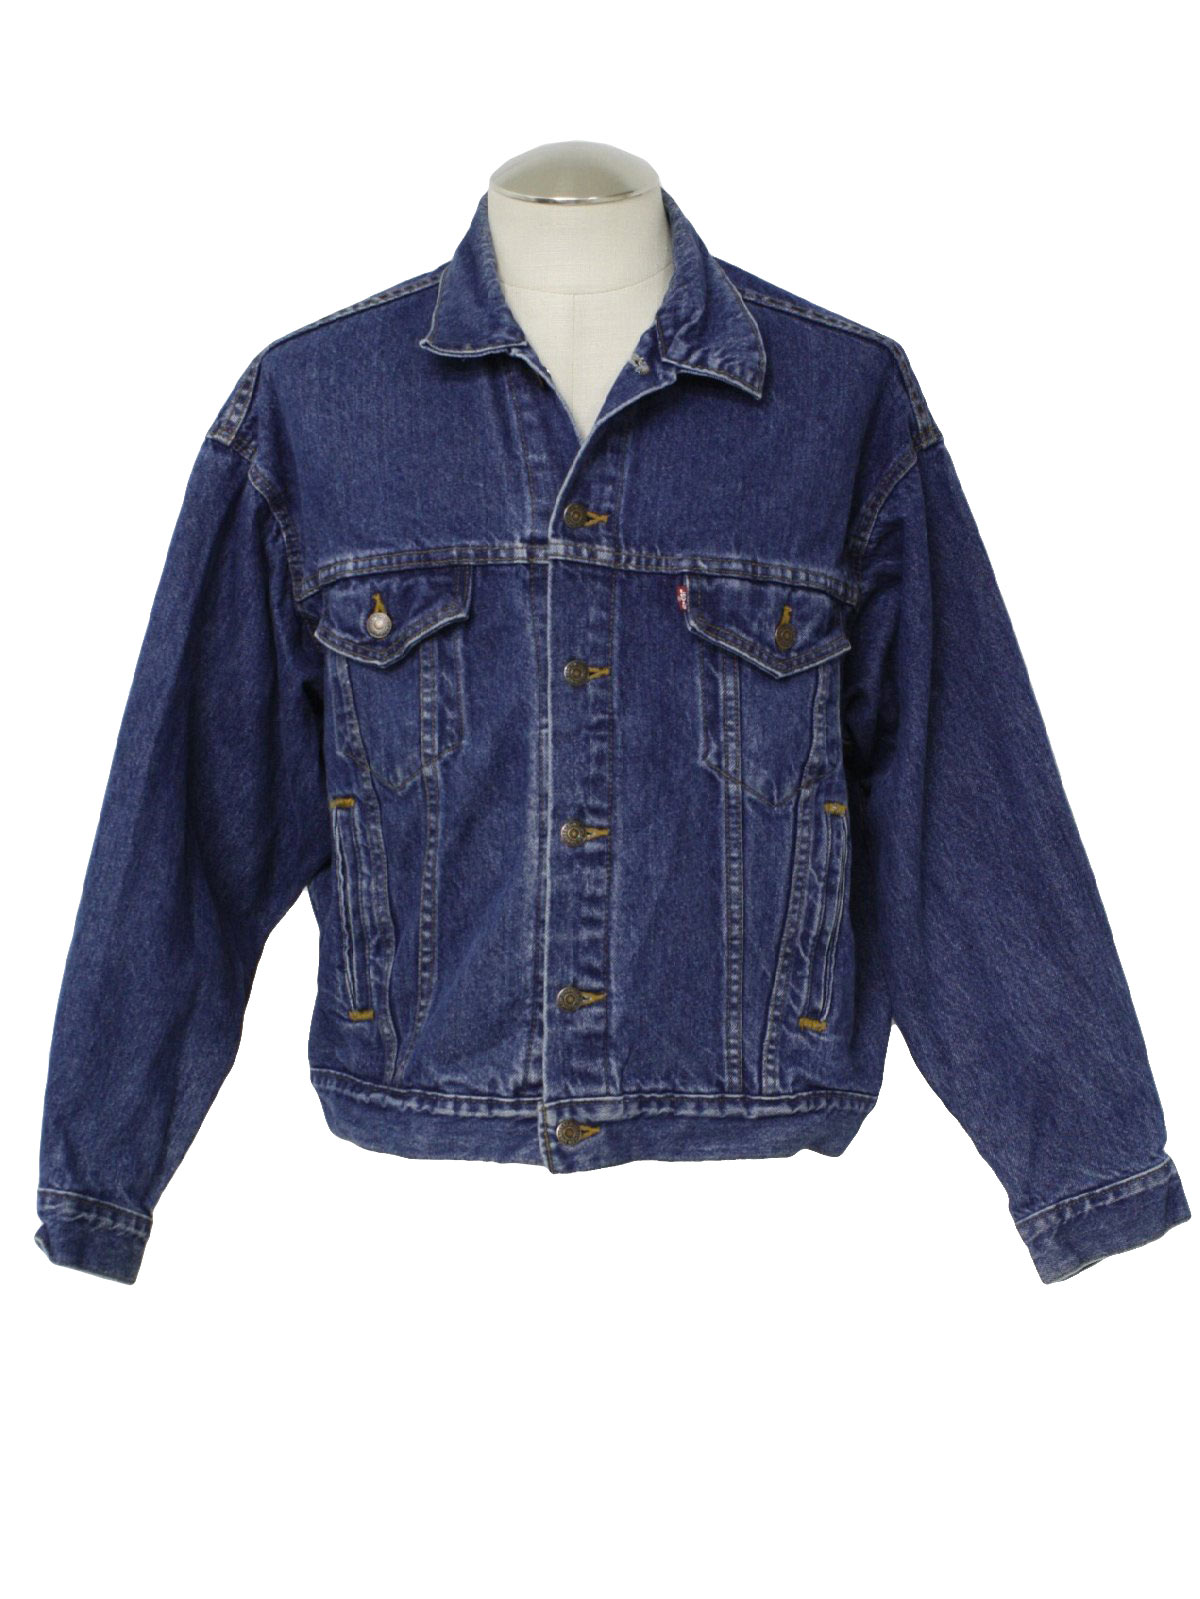 Retro Eighties Jacket: 80s -Levis- Mens blue cotton denim button front ...